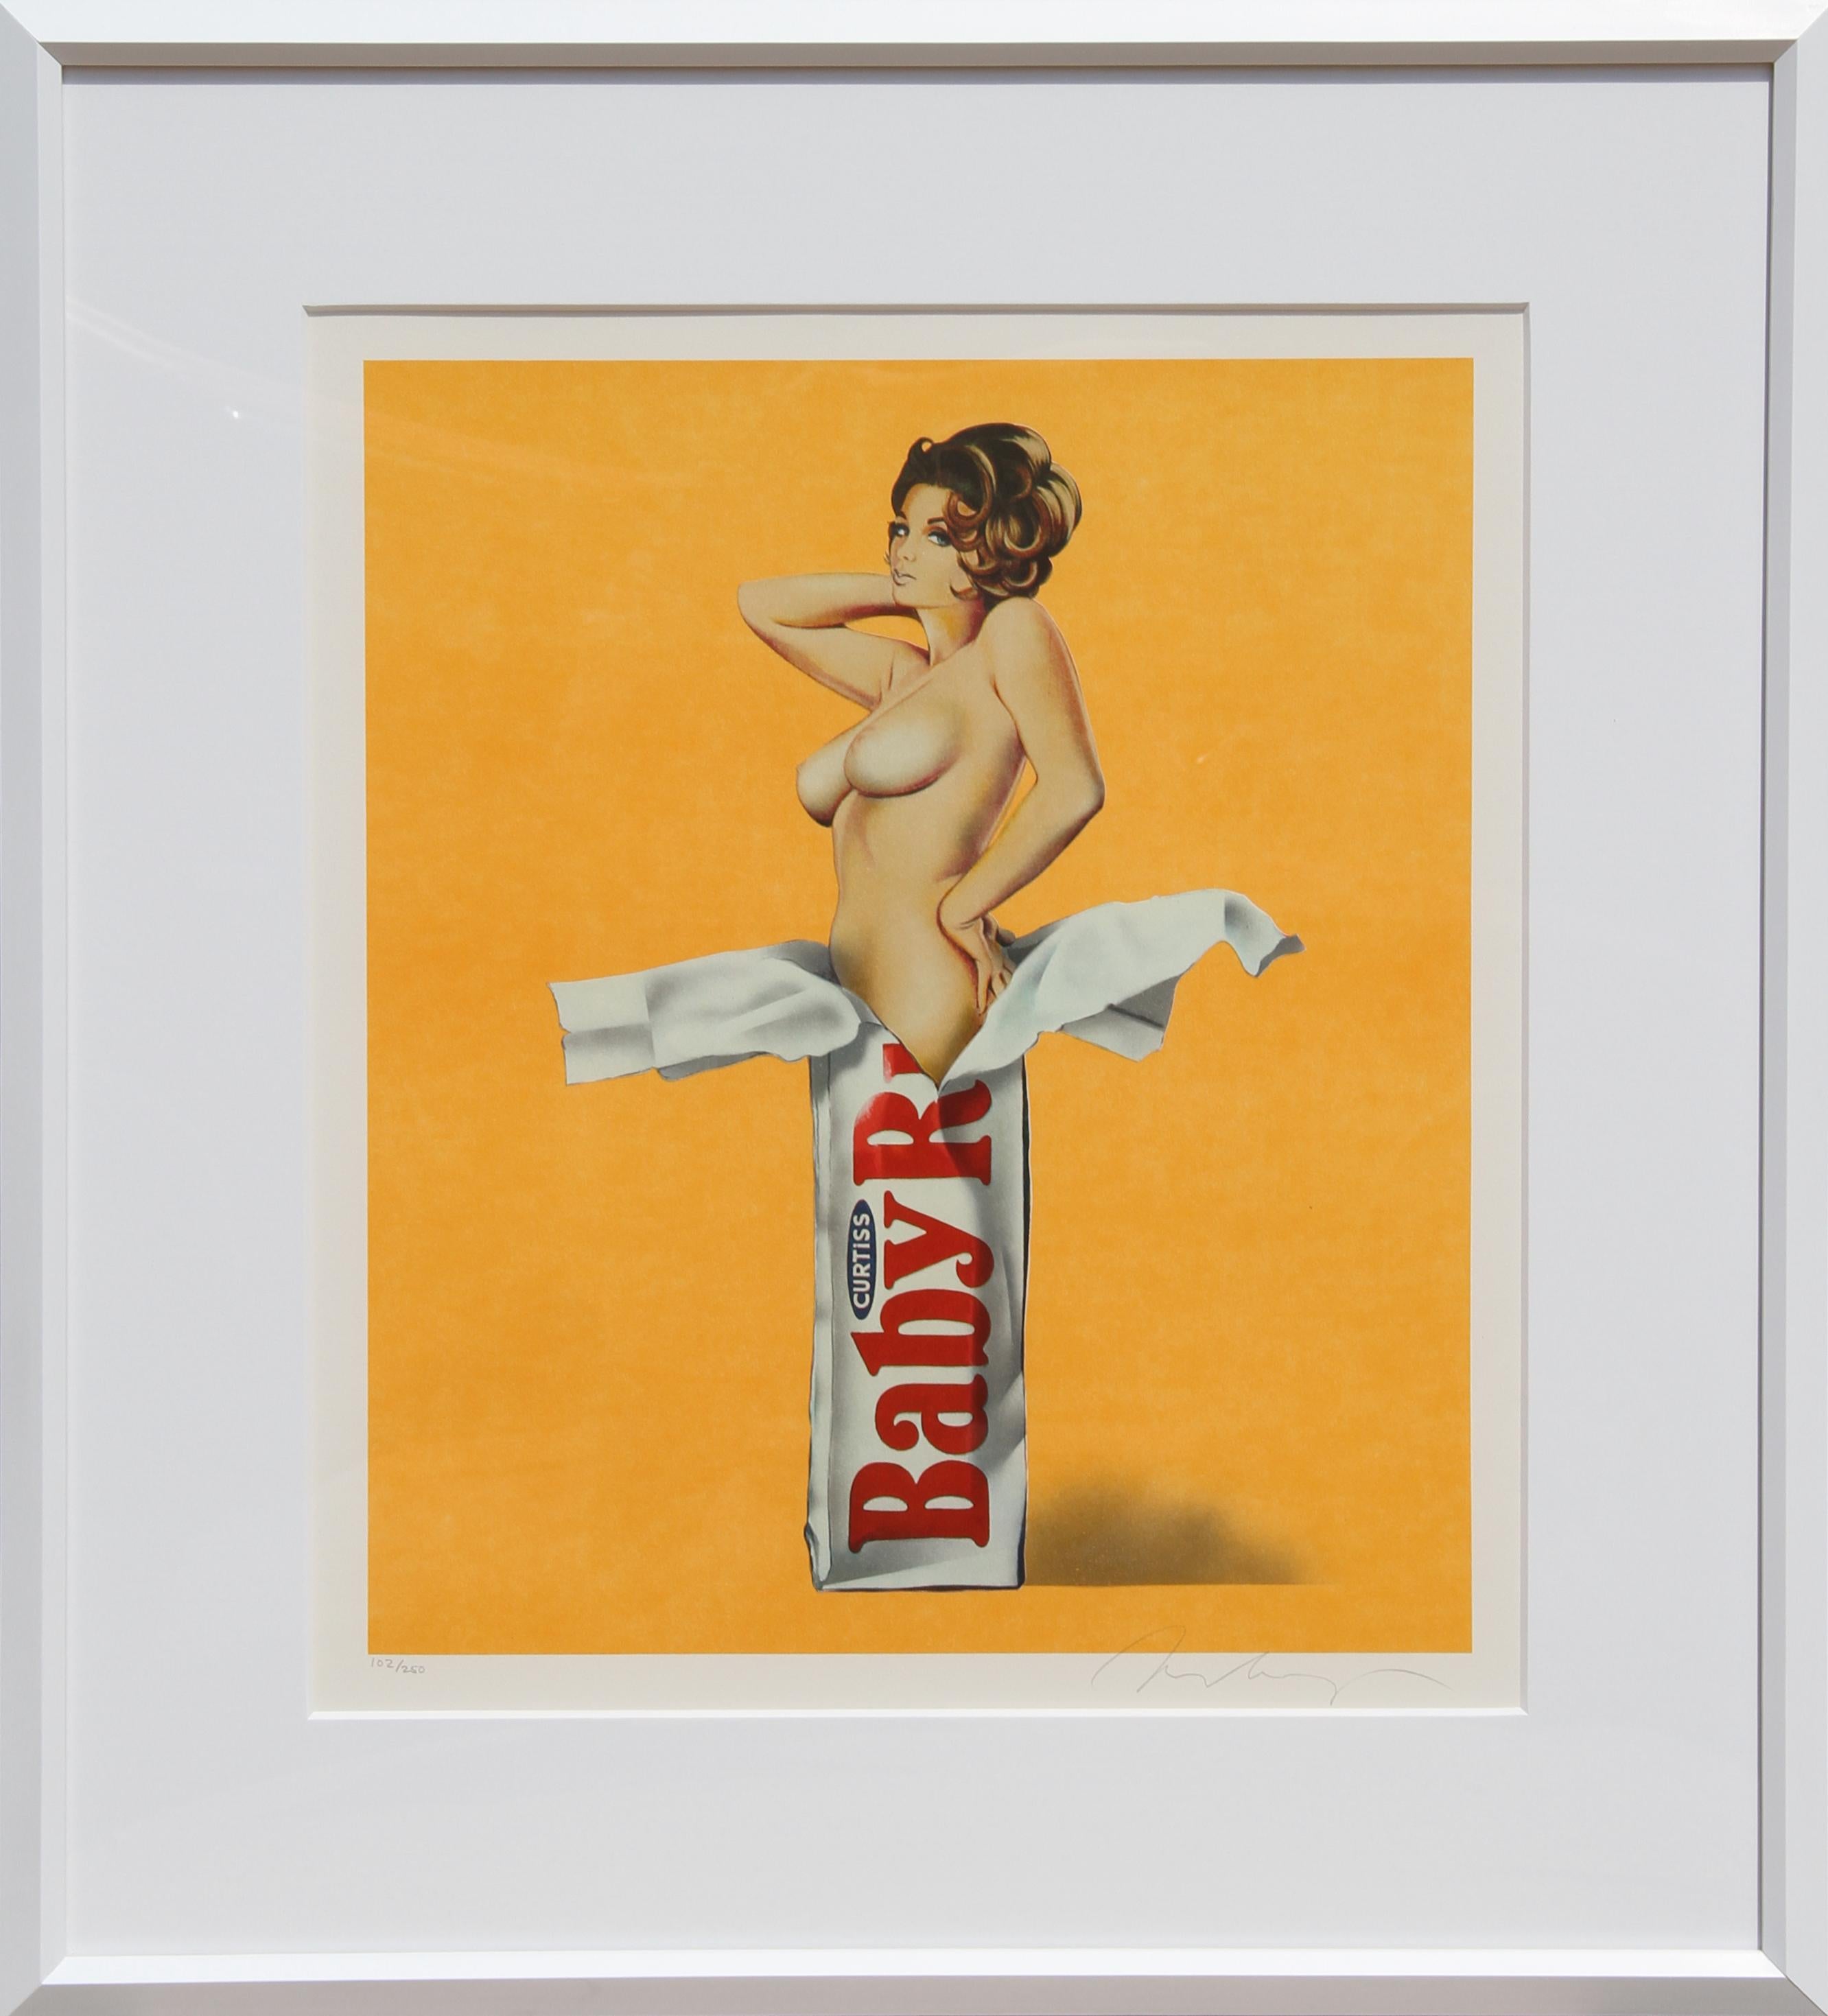 Artiste : Mel Ramos, américain (1935 - )
Titre : Candy (Baby Ruth)
Année : 1981
Médium : Lithographie, signée et numérotée au crayon 
Edition : 250
Taille du papier : 62,23 cm x 50,8 cm (24,5 in. x 20 in.)
Cadre : 28 x 25 pouces